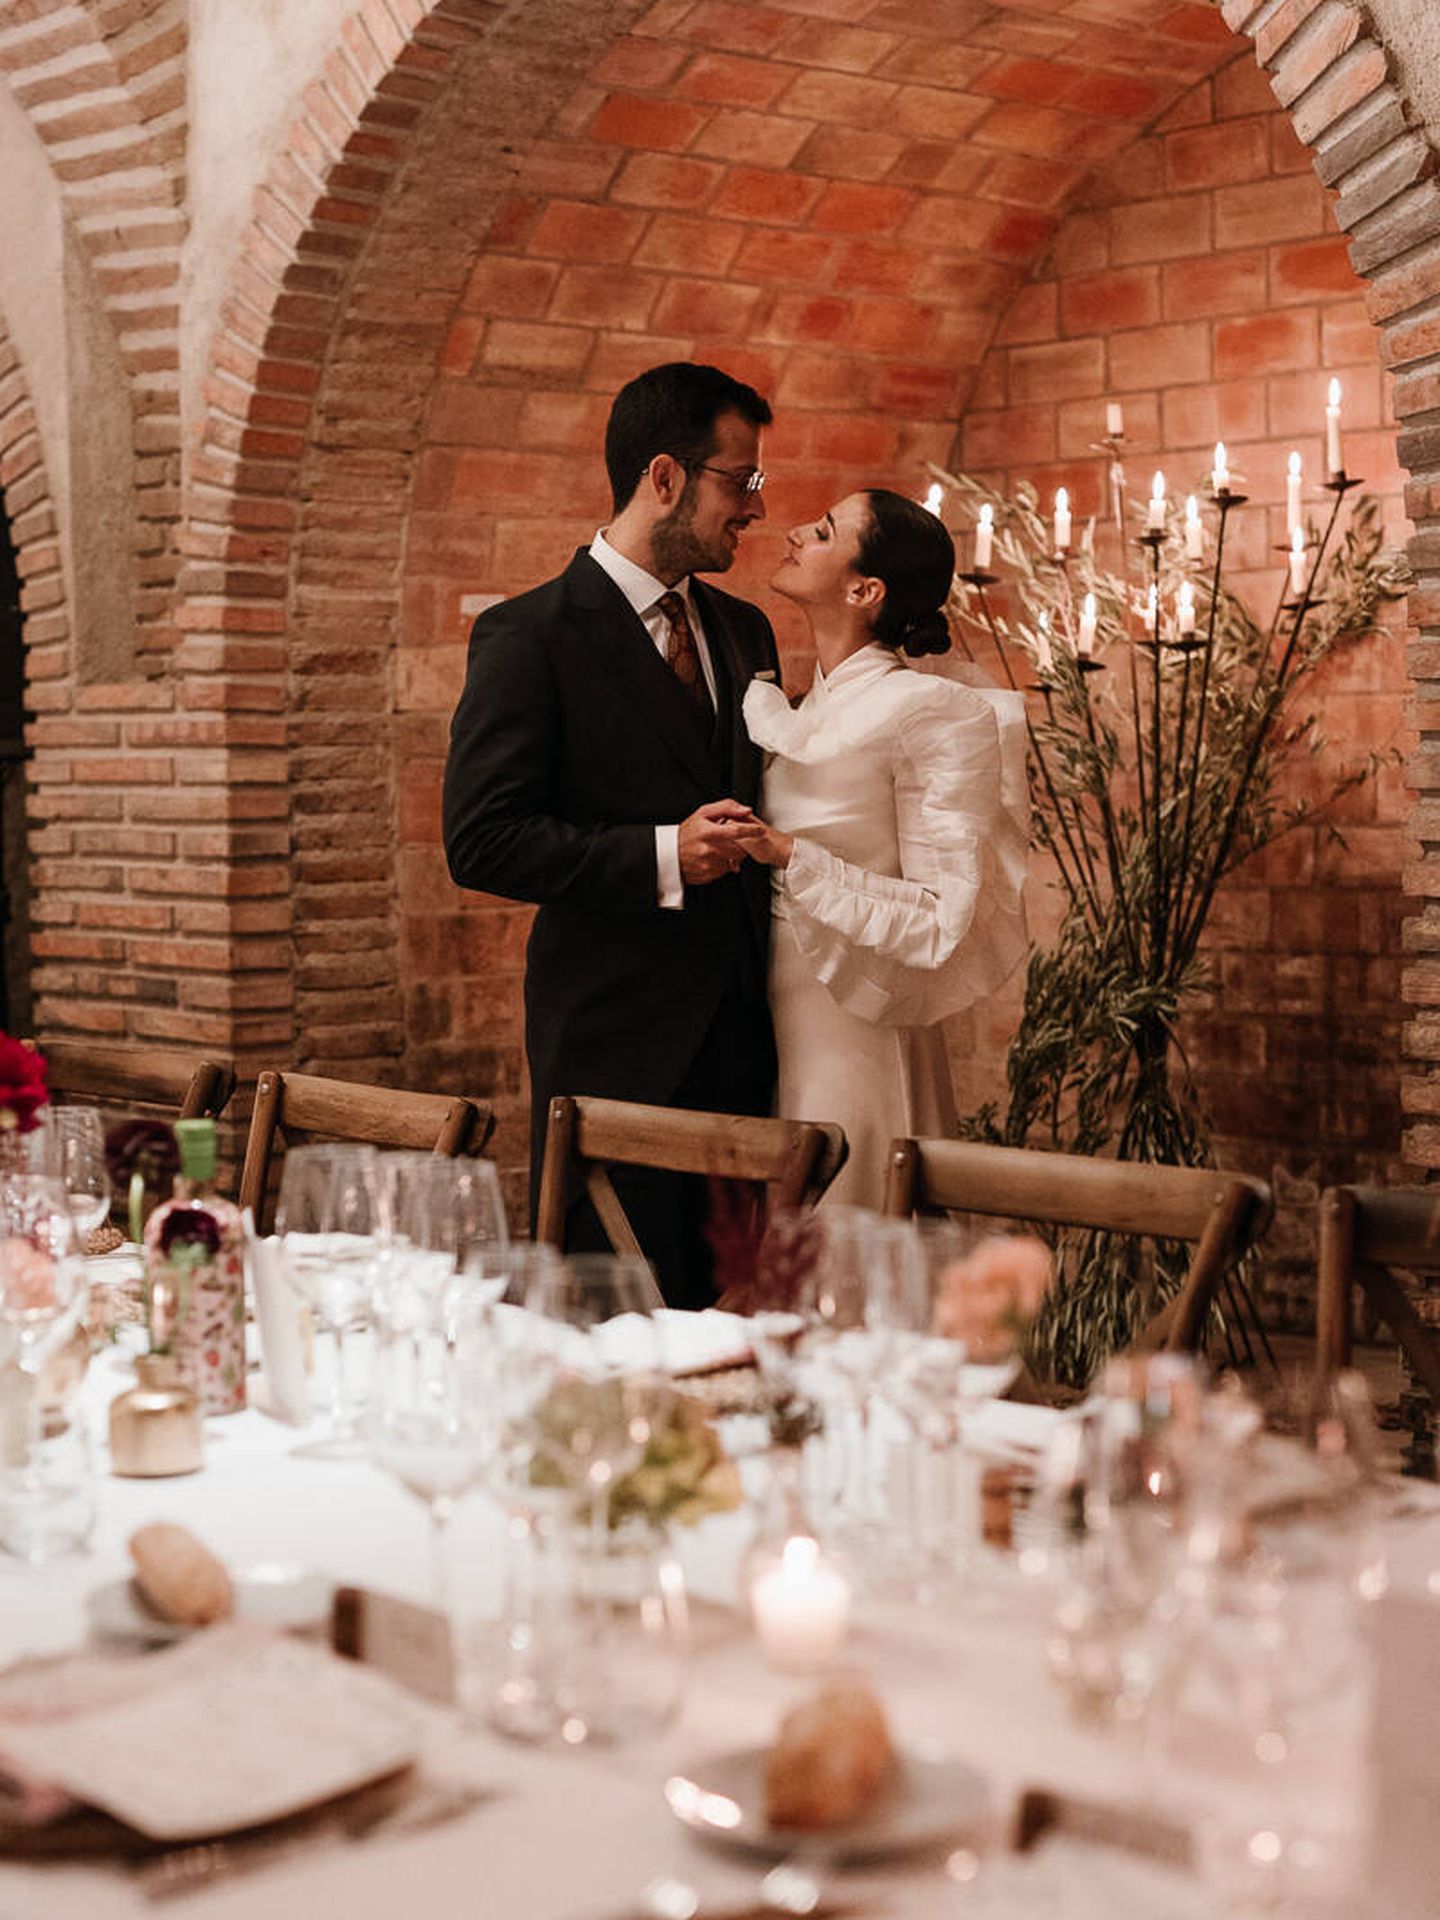 La boda de Silvia en una bodega familiar de La Rioja. (Días de vino y rosas)